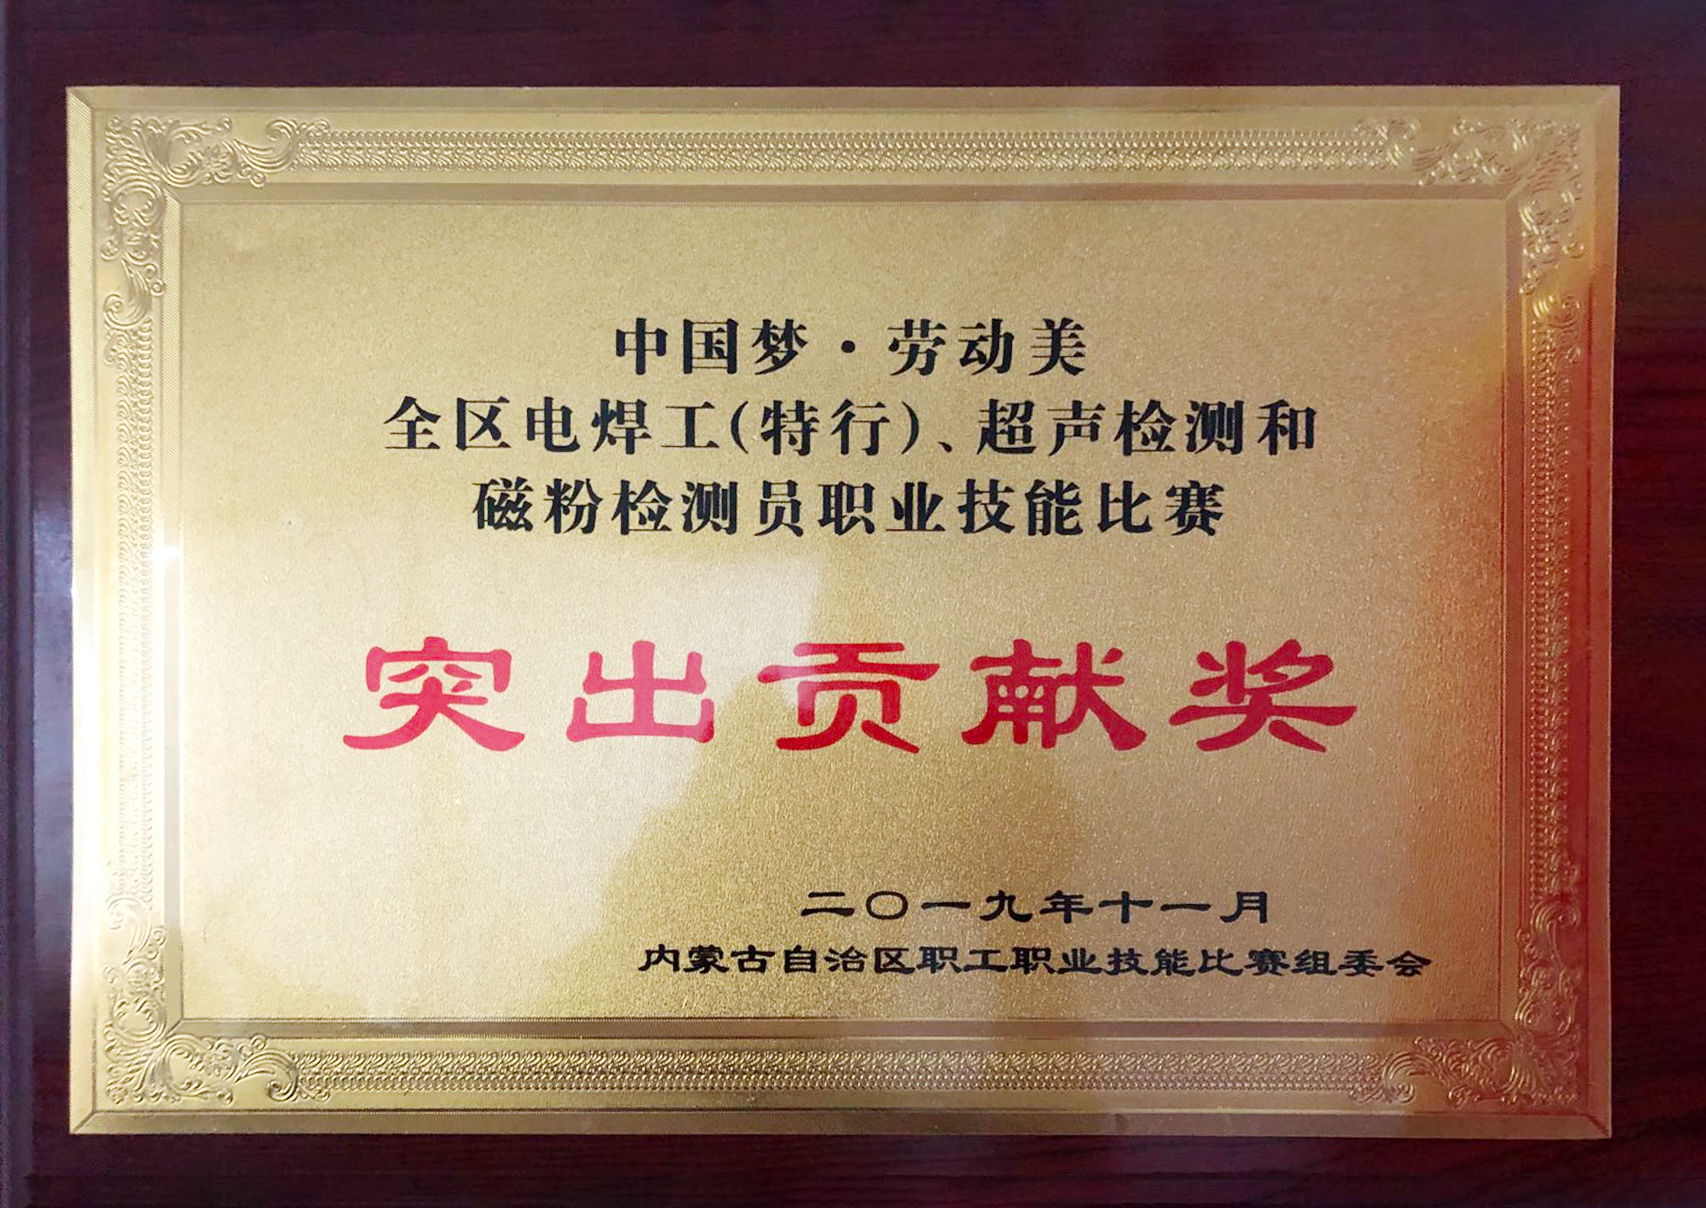 中国梦·劳动美全区电焊工（特行）、超声检测和磁粉检测员职业技能比赛突出贡献奖